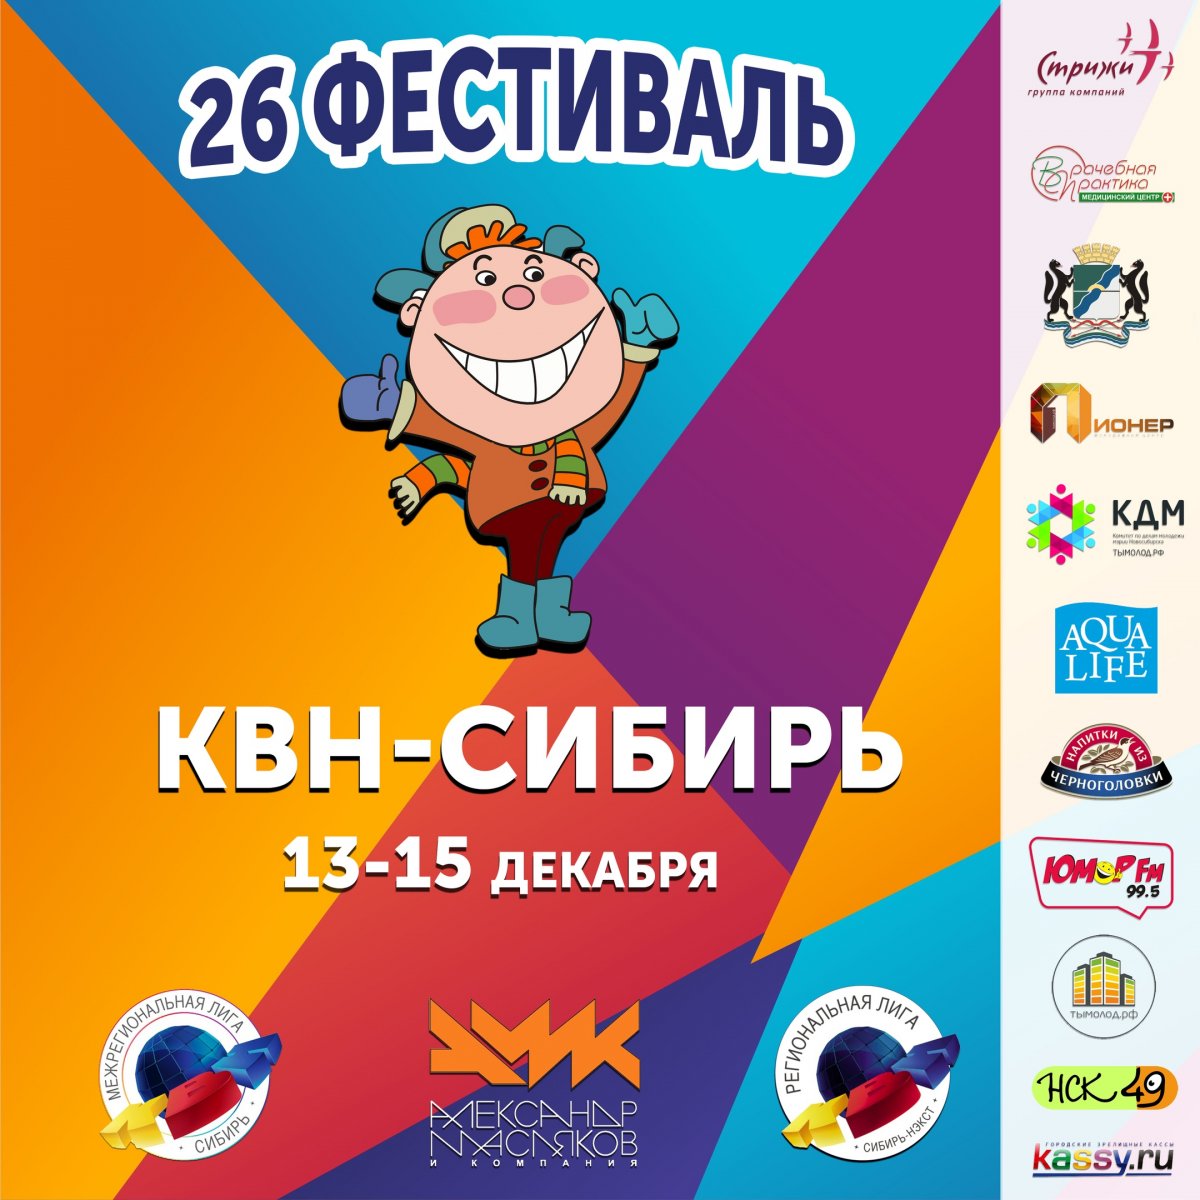 Оргкомитет Межрегиональной лиги «КВН-Сибирь» МС КВН приглашает команды КВН принять участие в 26-ом ОТКРЫТОМ фестивале команд КВН, который пройдёт с 13 по 15 декабря 2018 г. в Новосибирске.